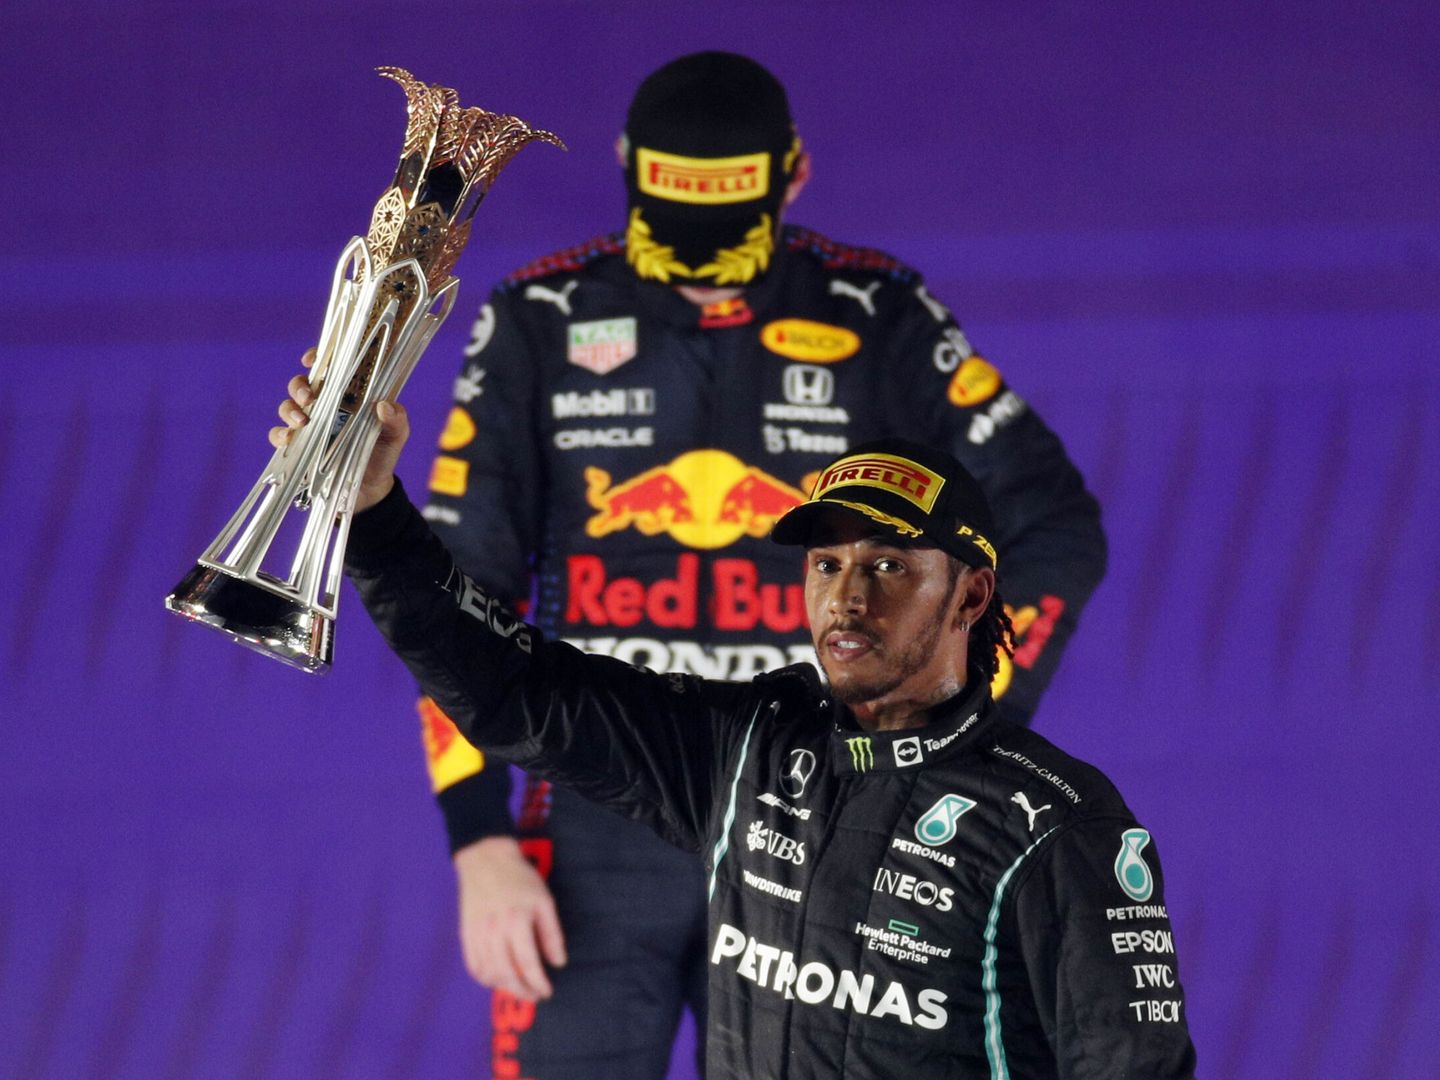 El antagonismo entre los partidarios y detractores de Lewis Hamilton y Max Verstappen crece cada carrera. (Reuters/Andrej Isakovic)